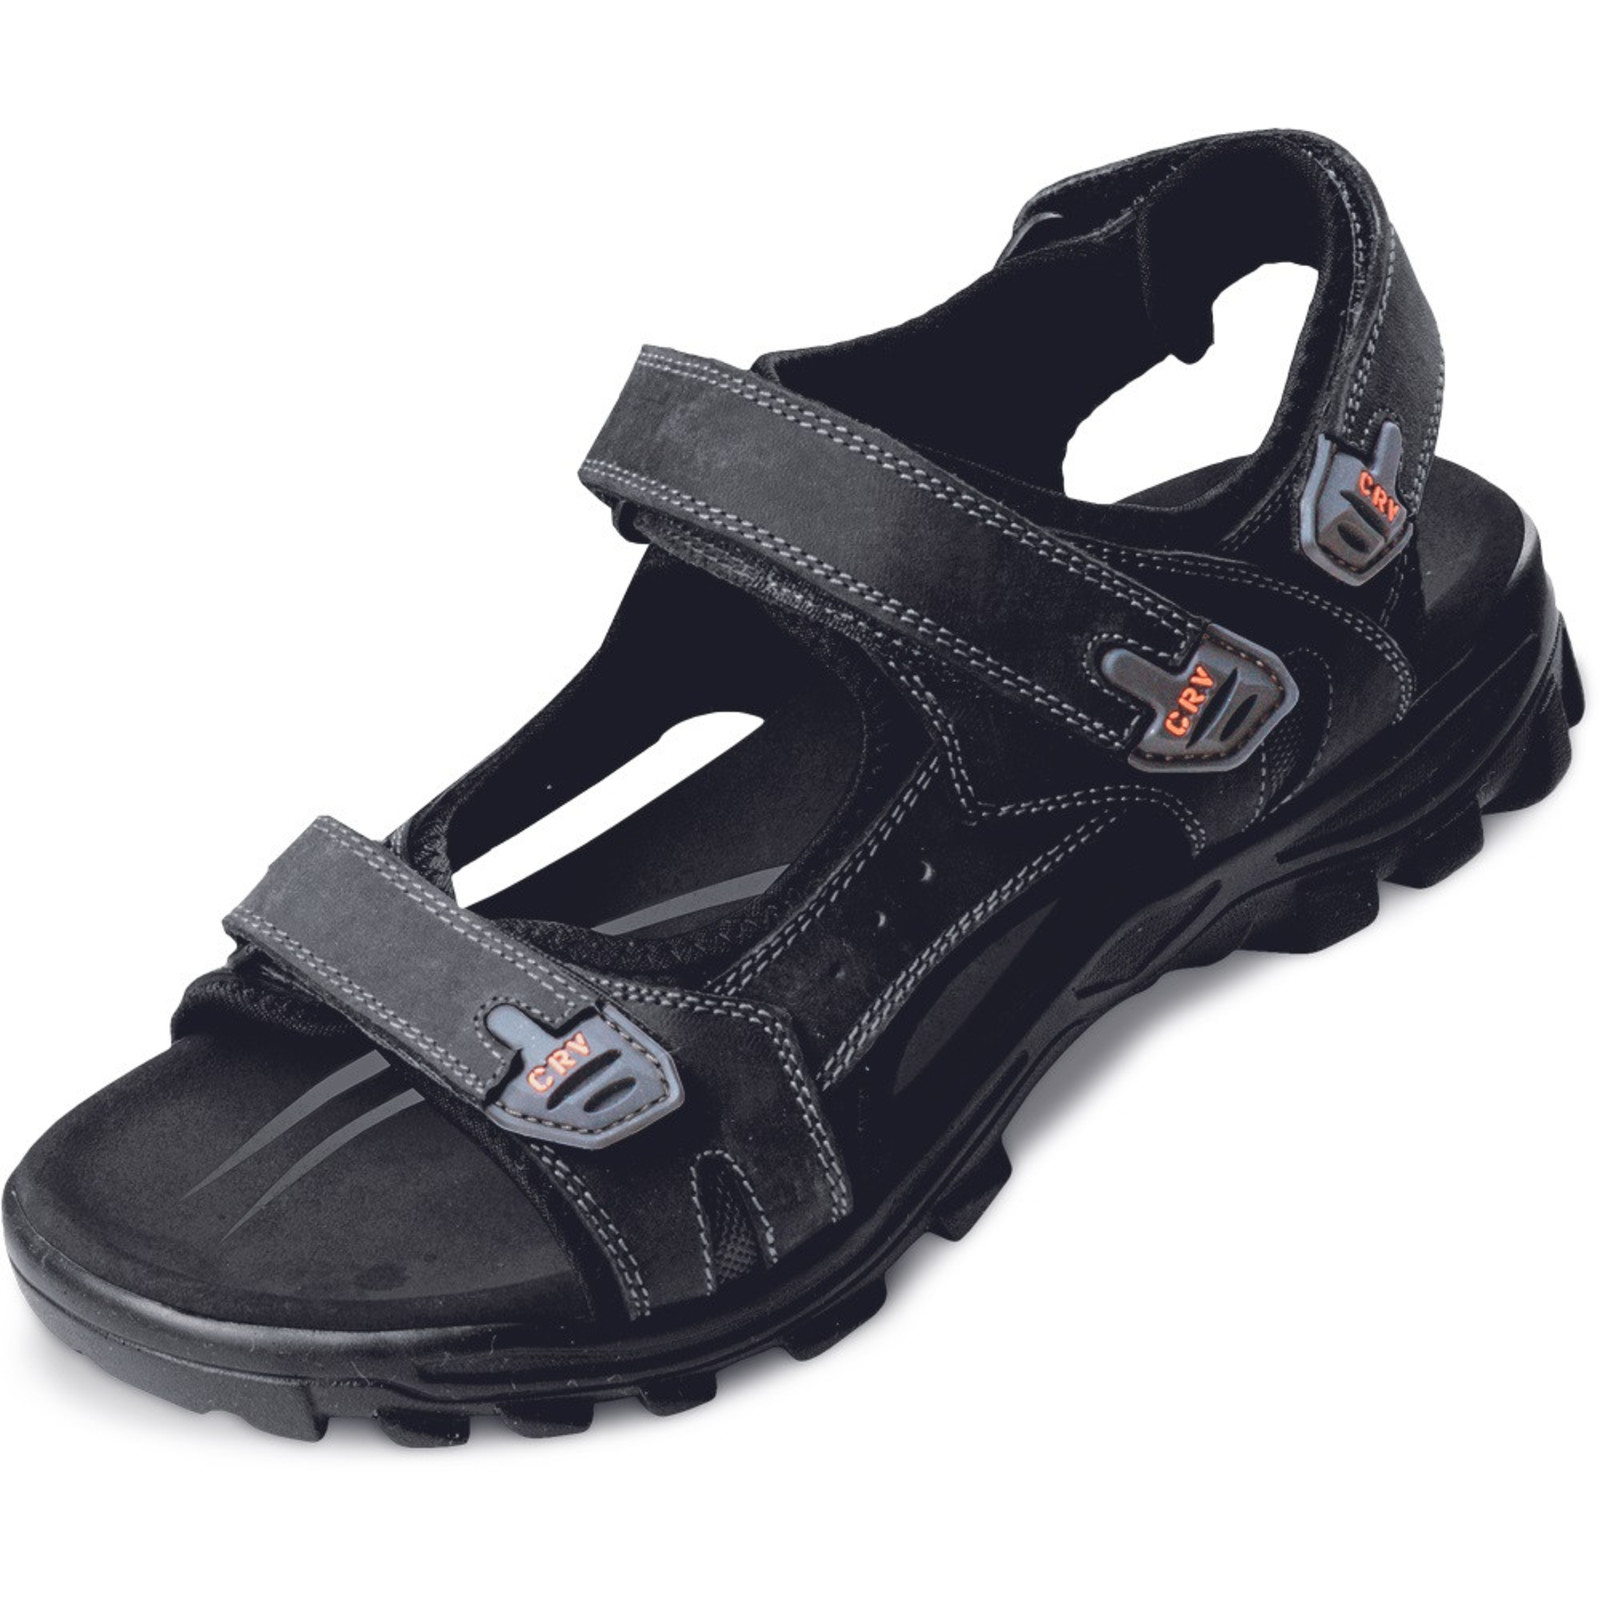 Sandále Wulik CRV pánske - veľkosť: 41, farba: čierna